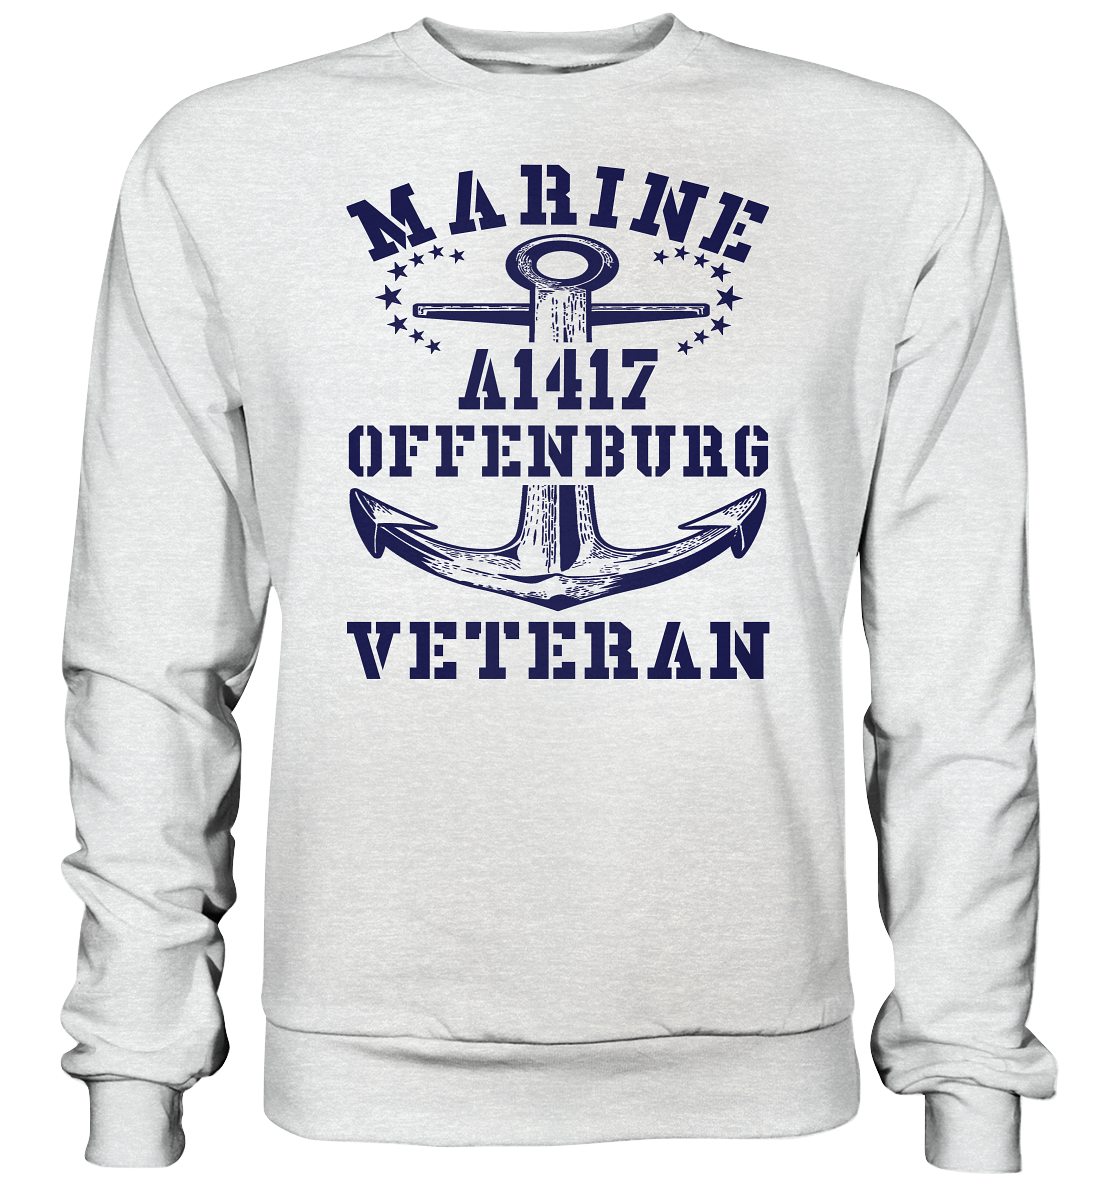 Troßschiff A1417 OFFENBURG Marine Veteran - Premium Sweatshirt